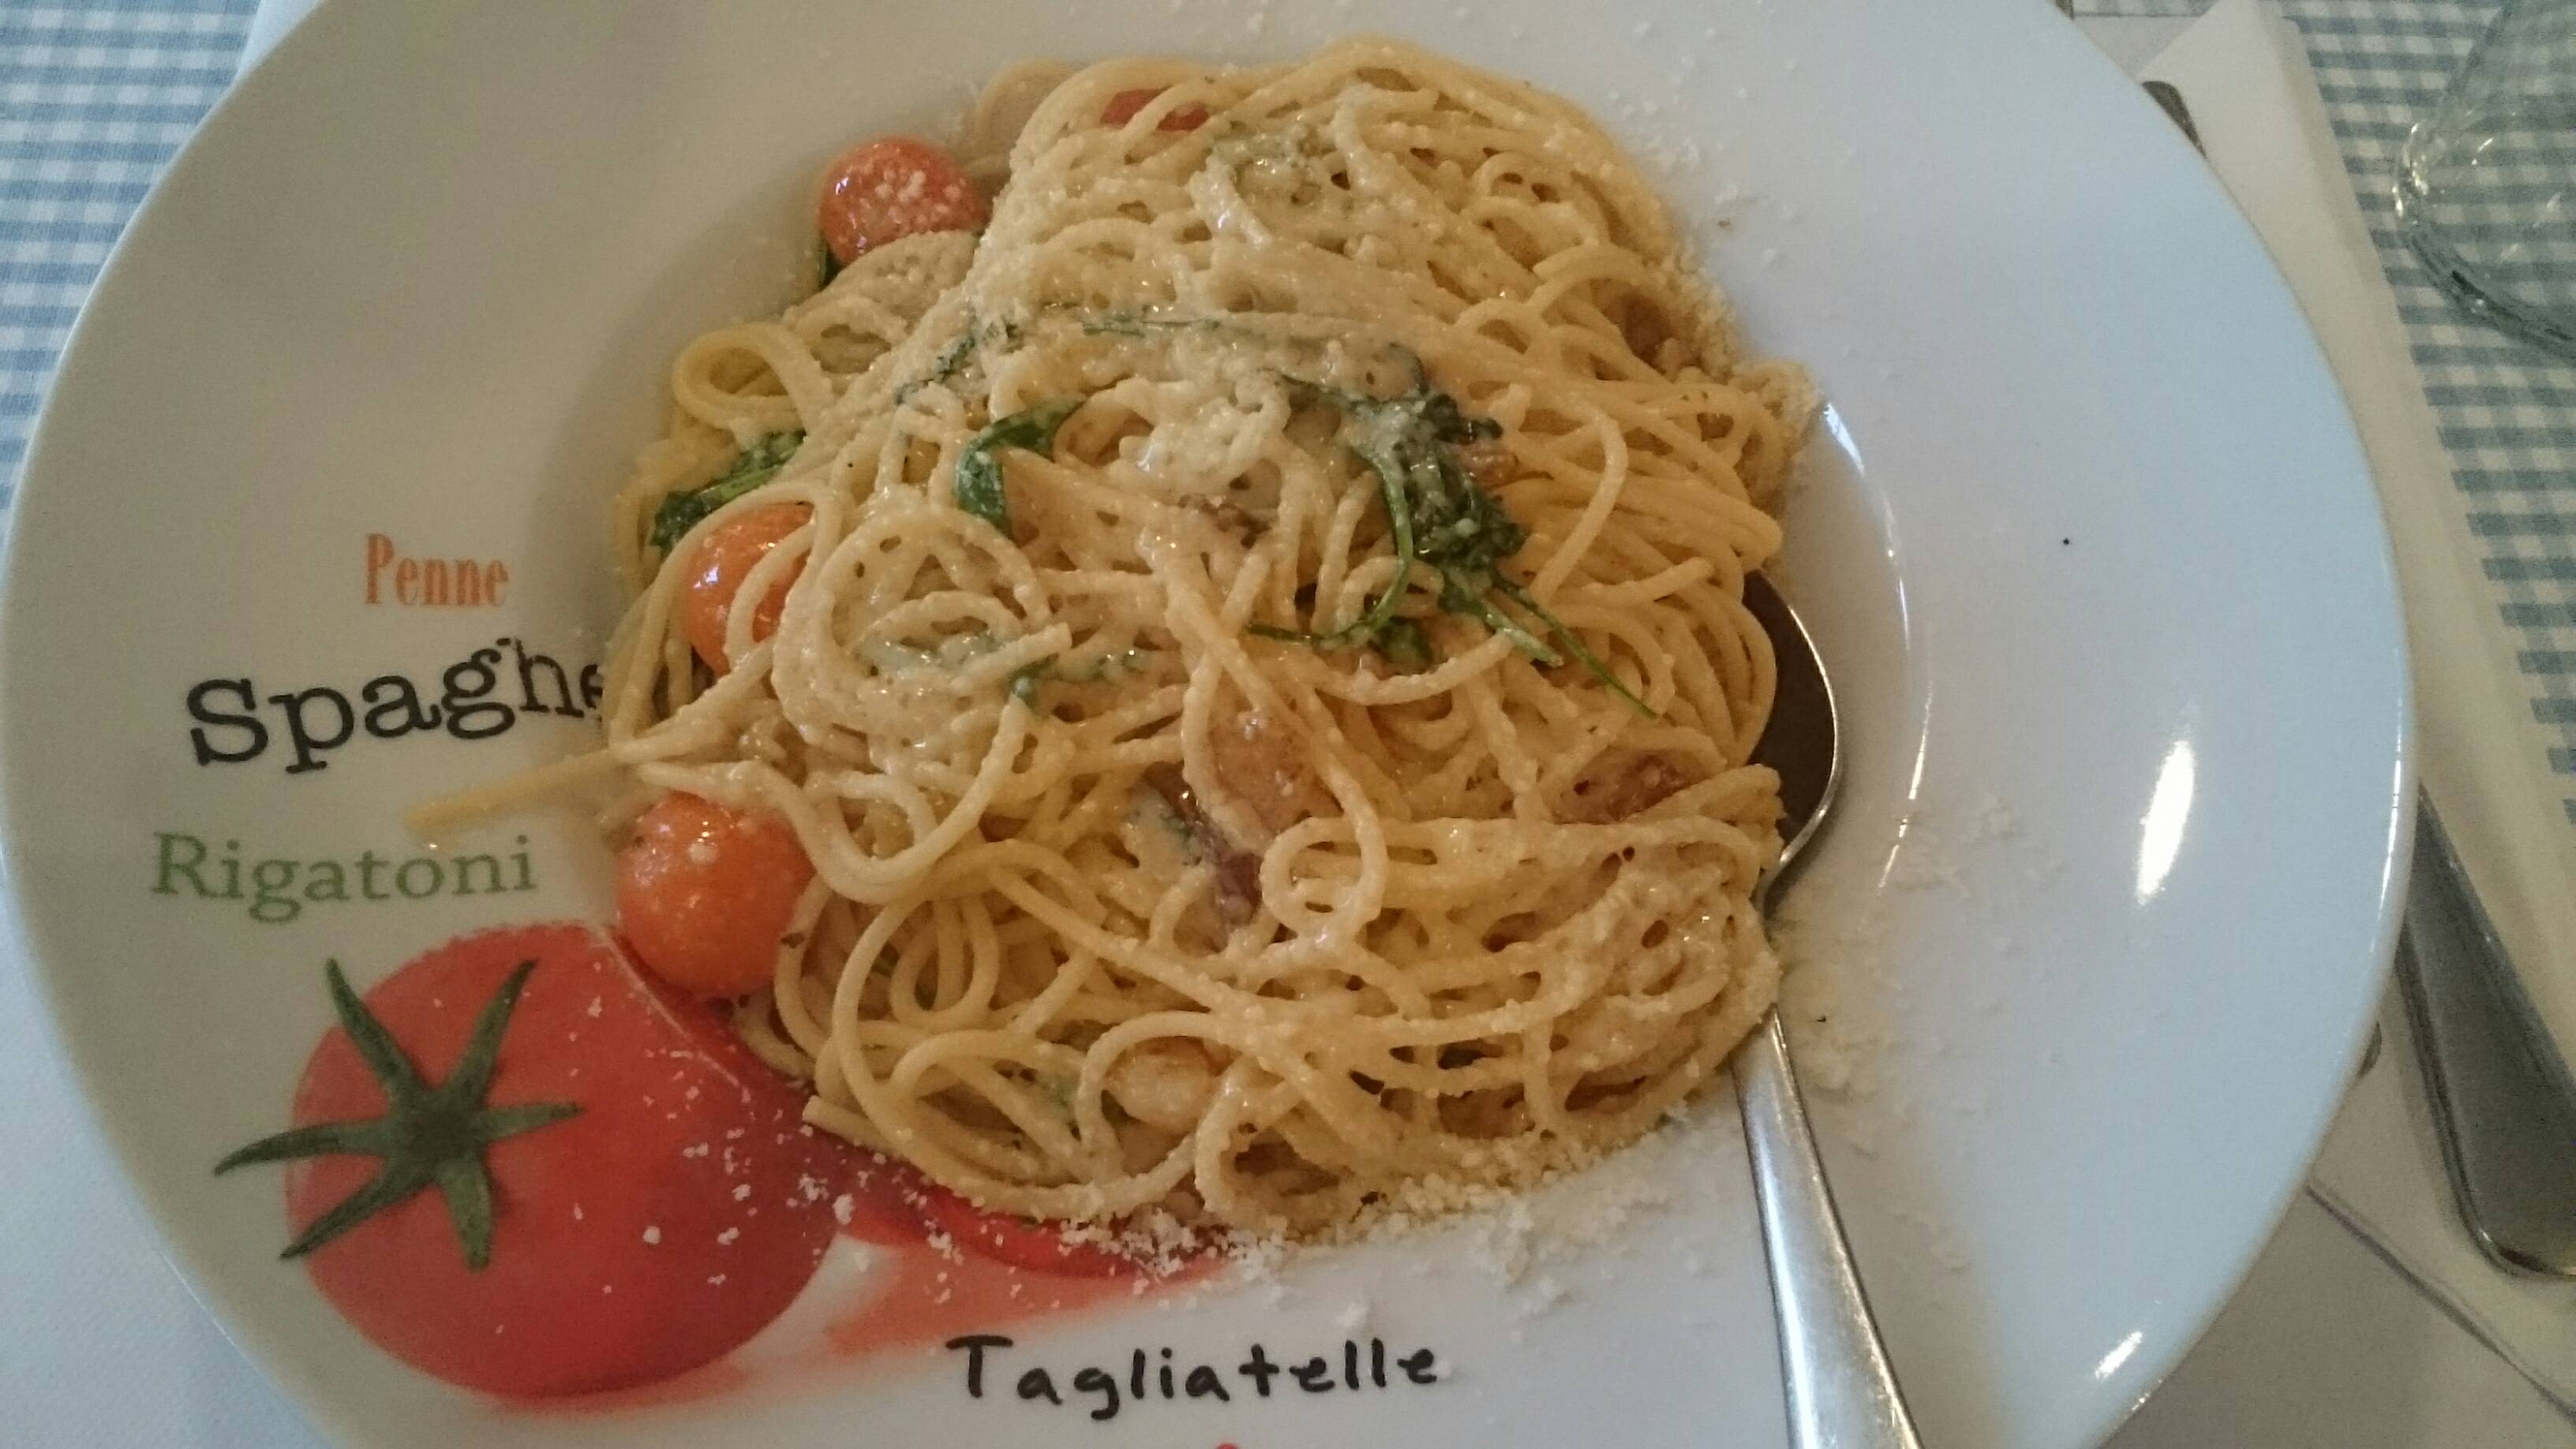 Spaghetti Aglio e Olio (9,50)